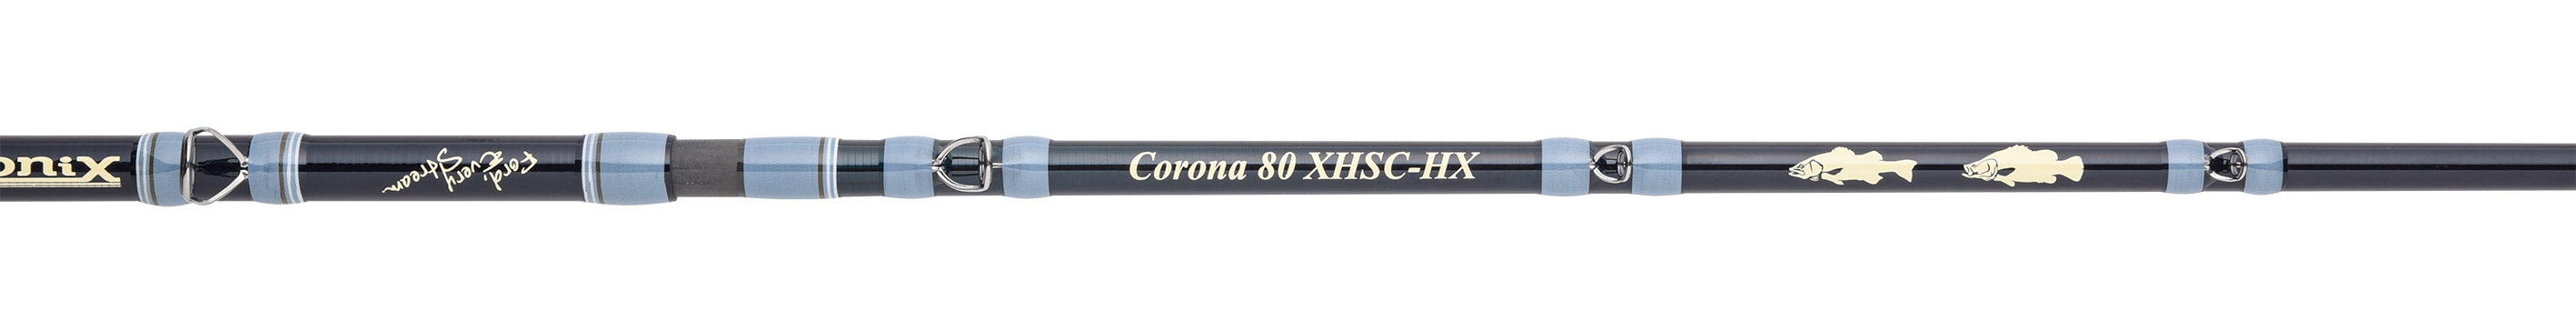 Corona 80 XHSC-HX | ロゴ